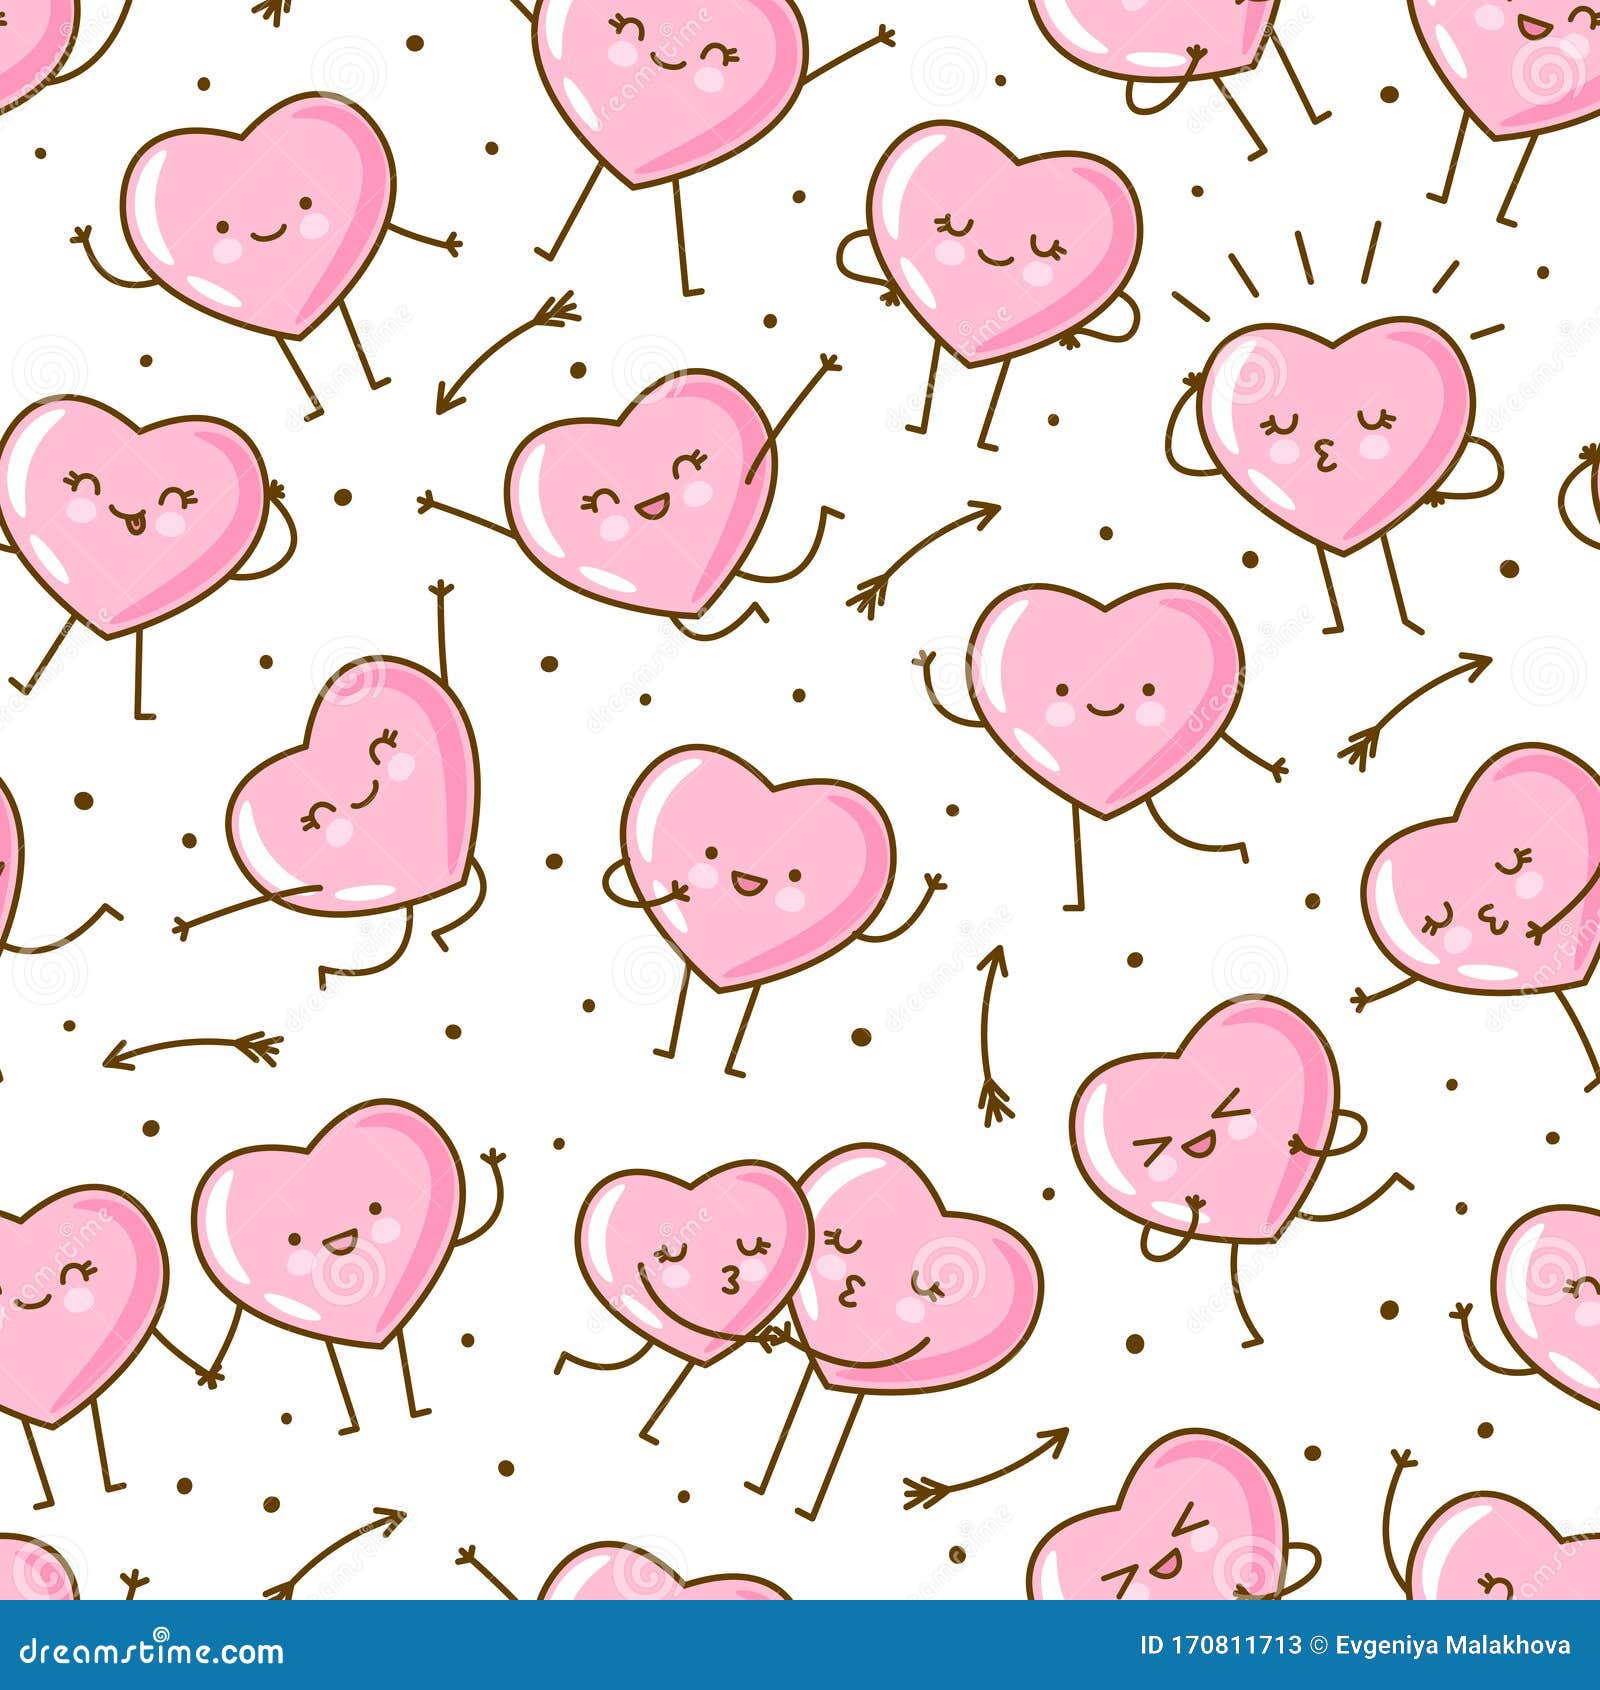 Kawaii Pink Hearts: Bạn là một người yêu thích phong cách Kawaii? Hãy để những trái tim hồng đáng yêu trang trí cho điện thoại hoặc máy tính của bạn. Với các hình ảnh cực kỳ dễ thương và đáng yêu, bạn sẽ không thể nào rời mắt khỏi chúng.